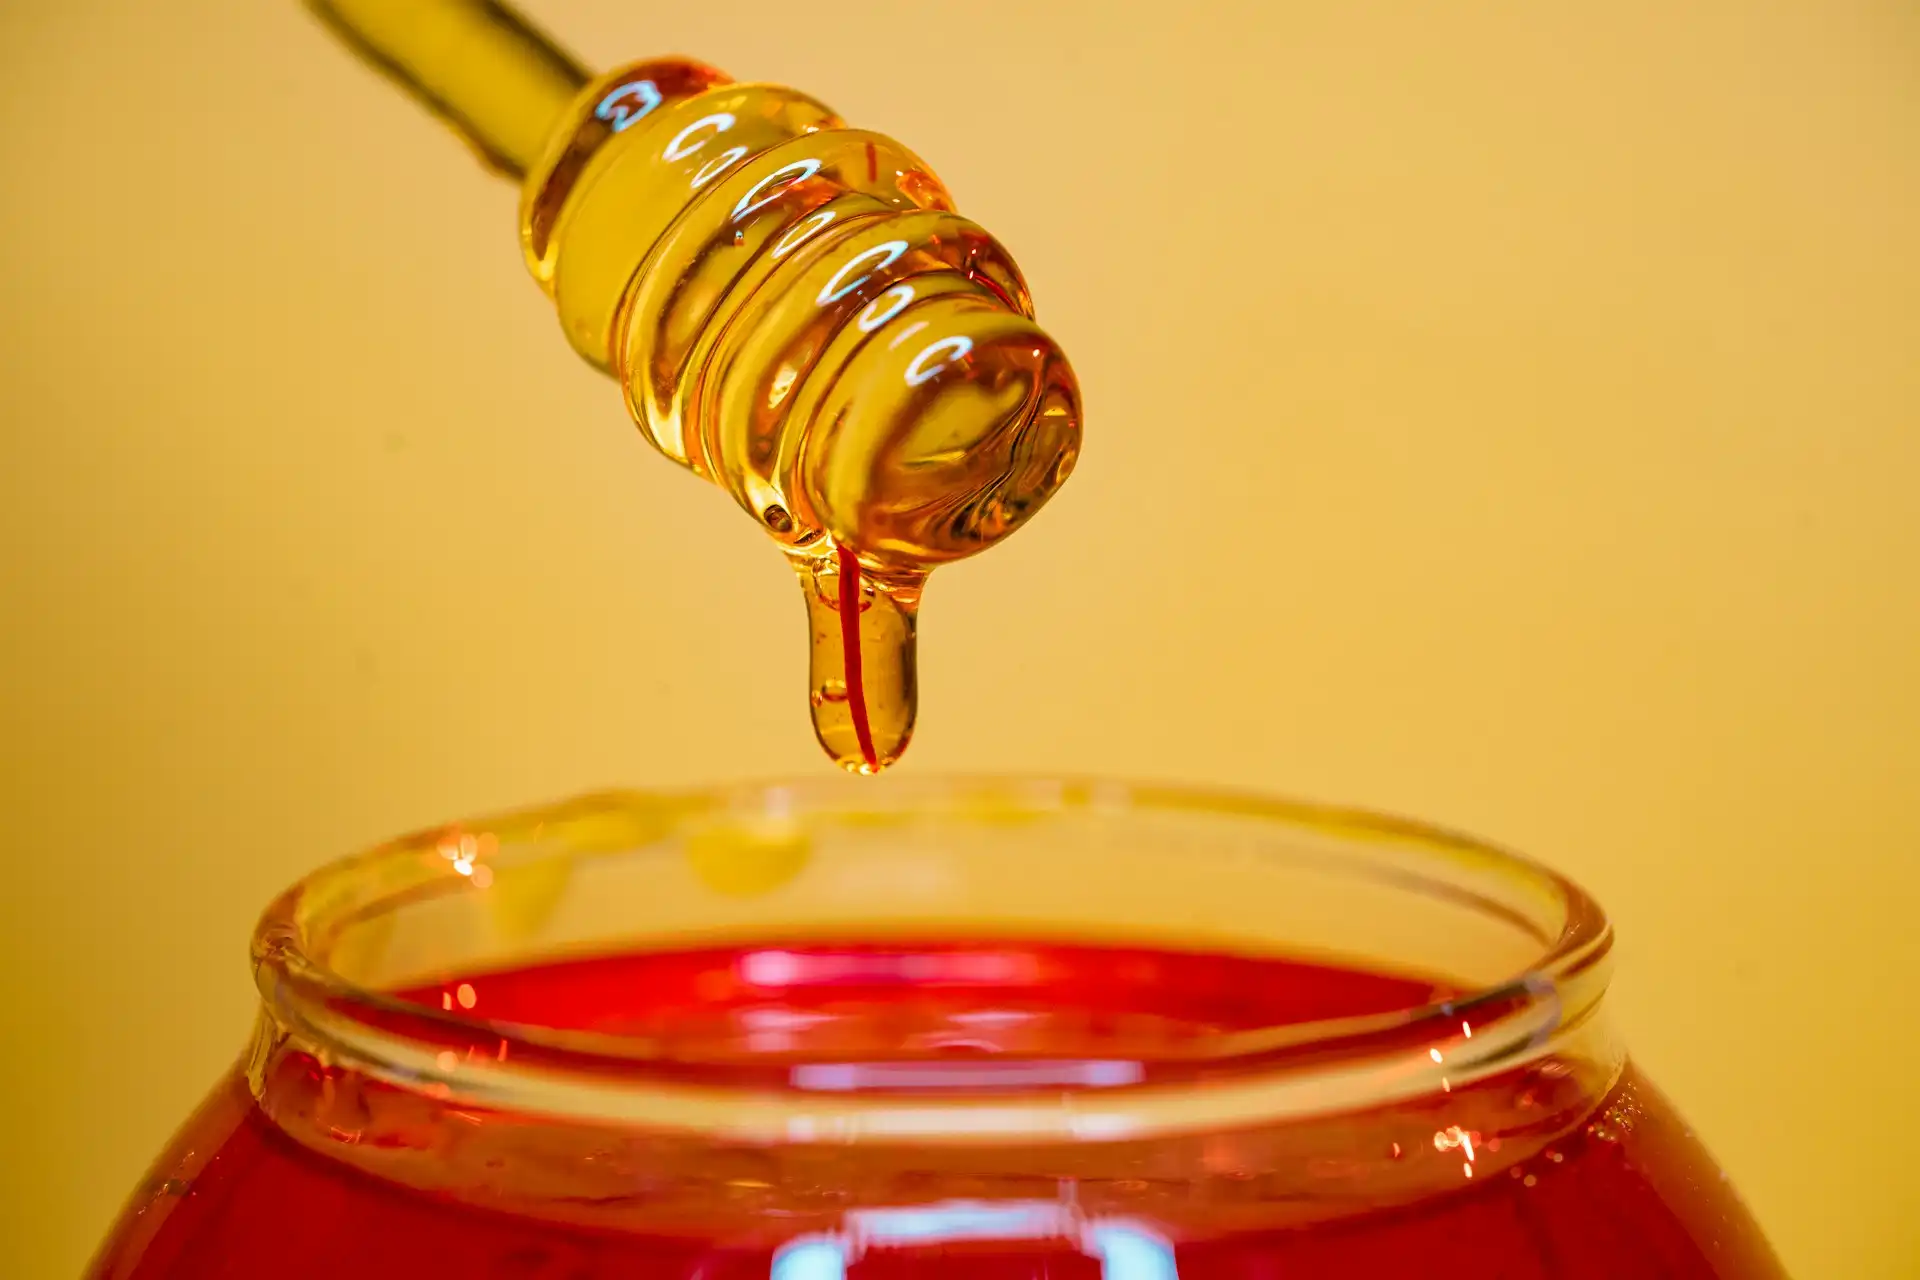 9 ricette con il miele da provare, buone, salutari e sorprendenti